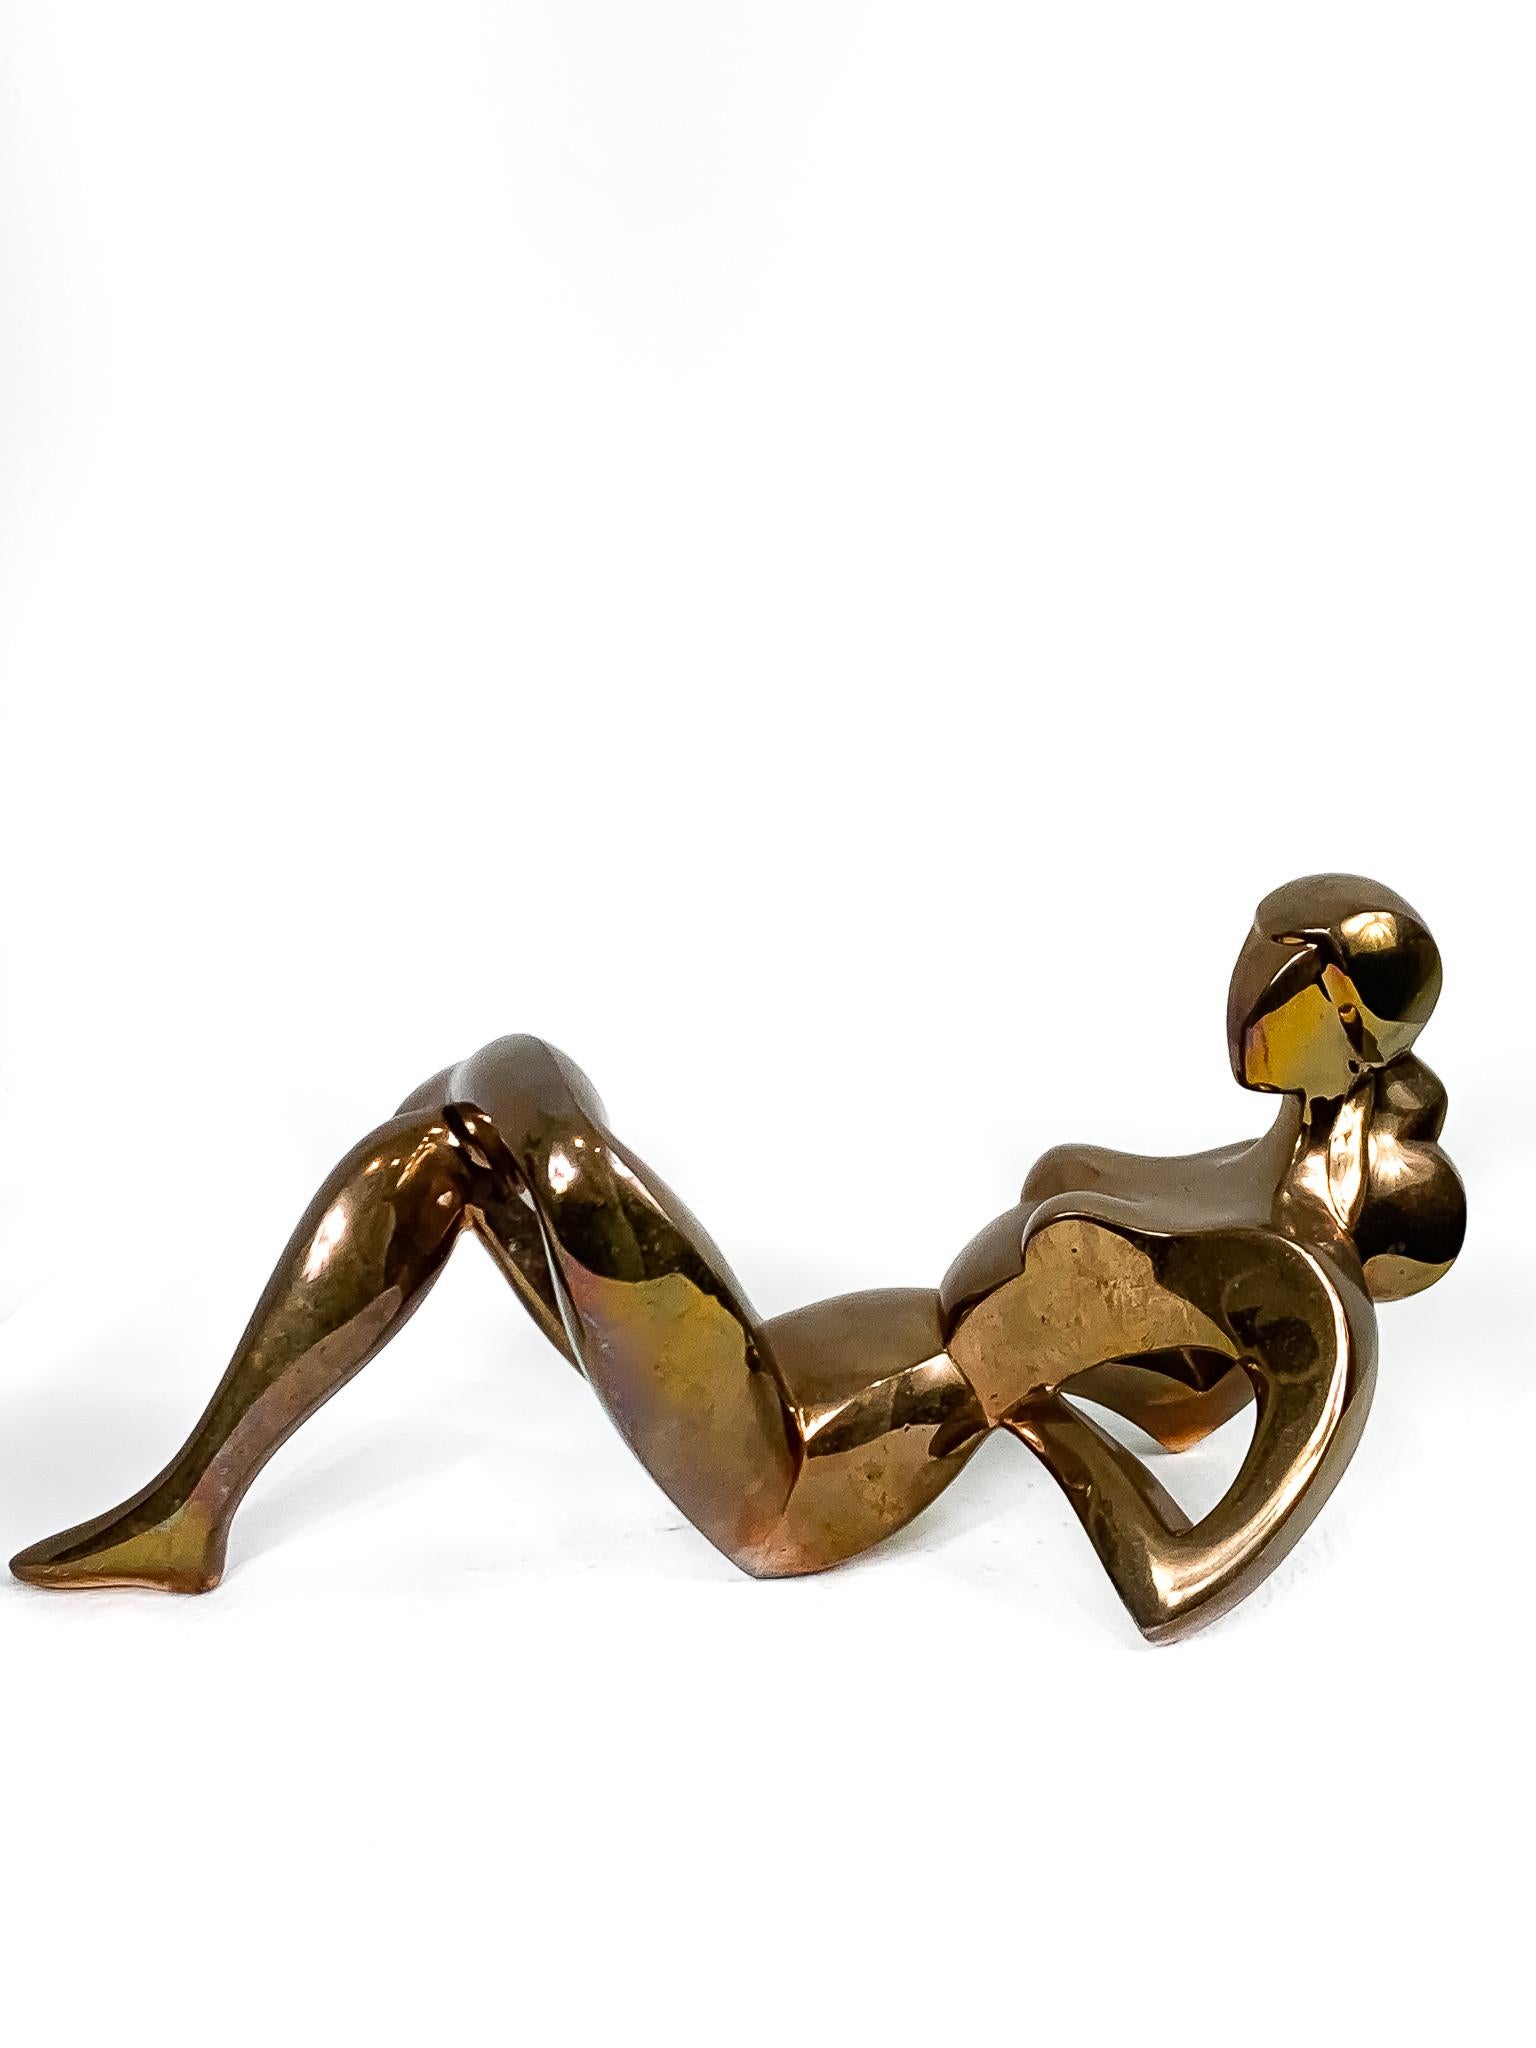 Medium: Bronze
Auflage 3/8

Jim Ritchie (1929-2017), geboren in Montreal, Kanada, ist bekannt für seine Pastellzeichnungen und Bronzeskulpturen. Stilistisch ist er mit dem Kubismus, dem abstrakten figurativen Werk und dem Modernismus verbunden, und